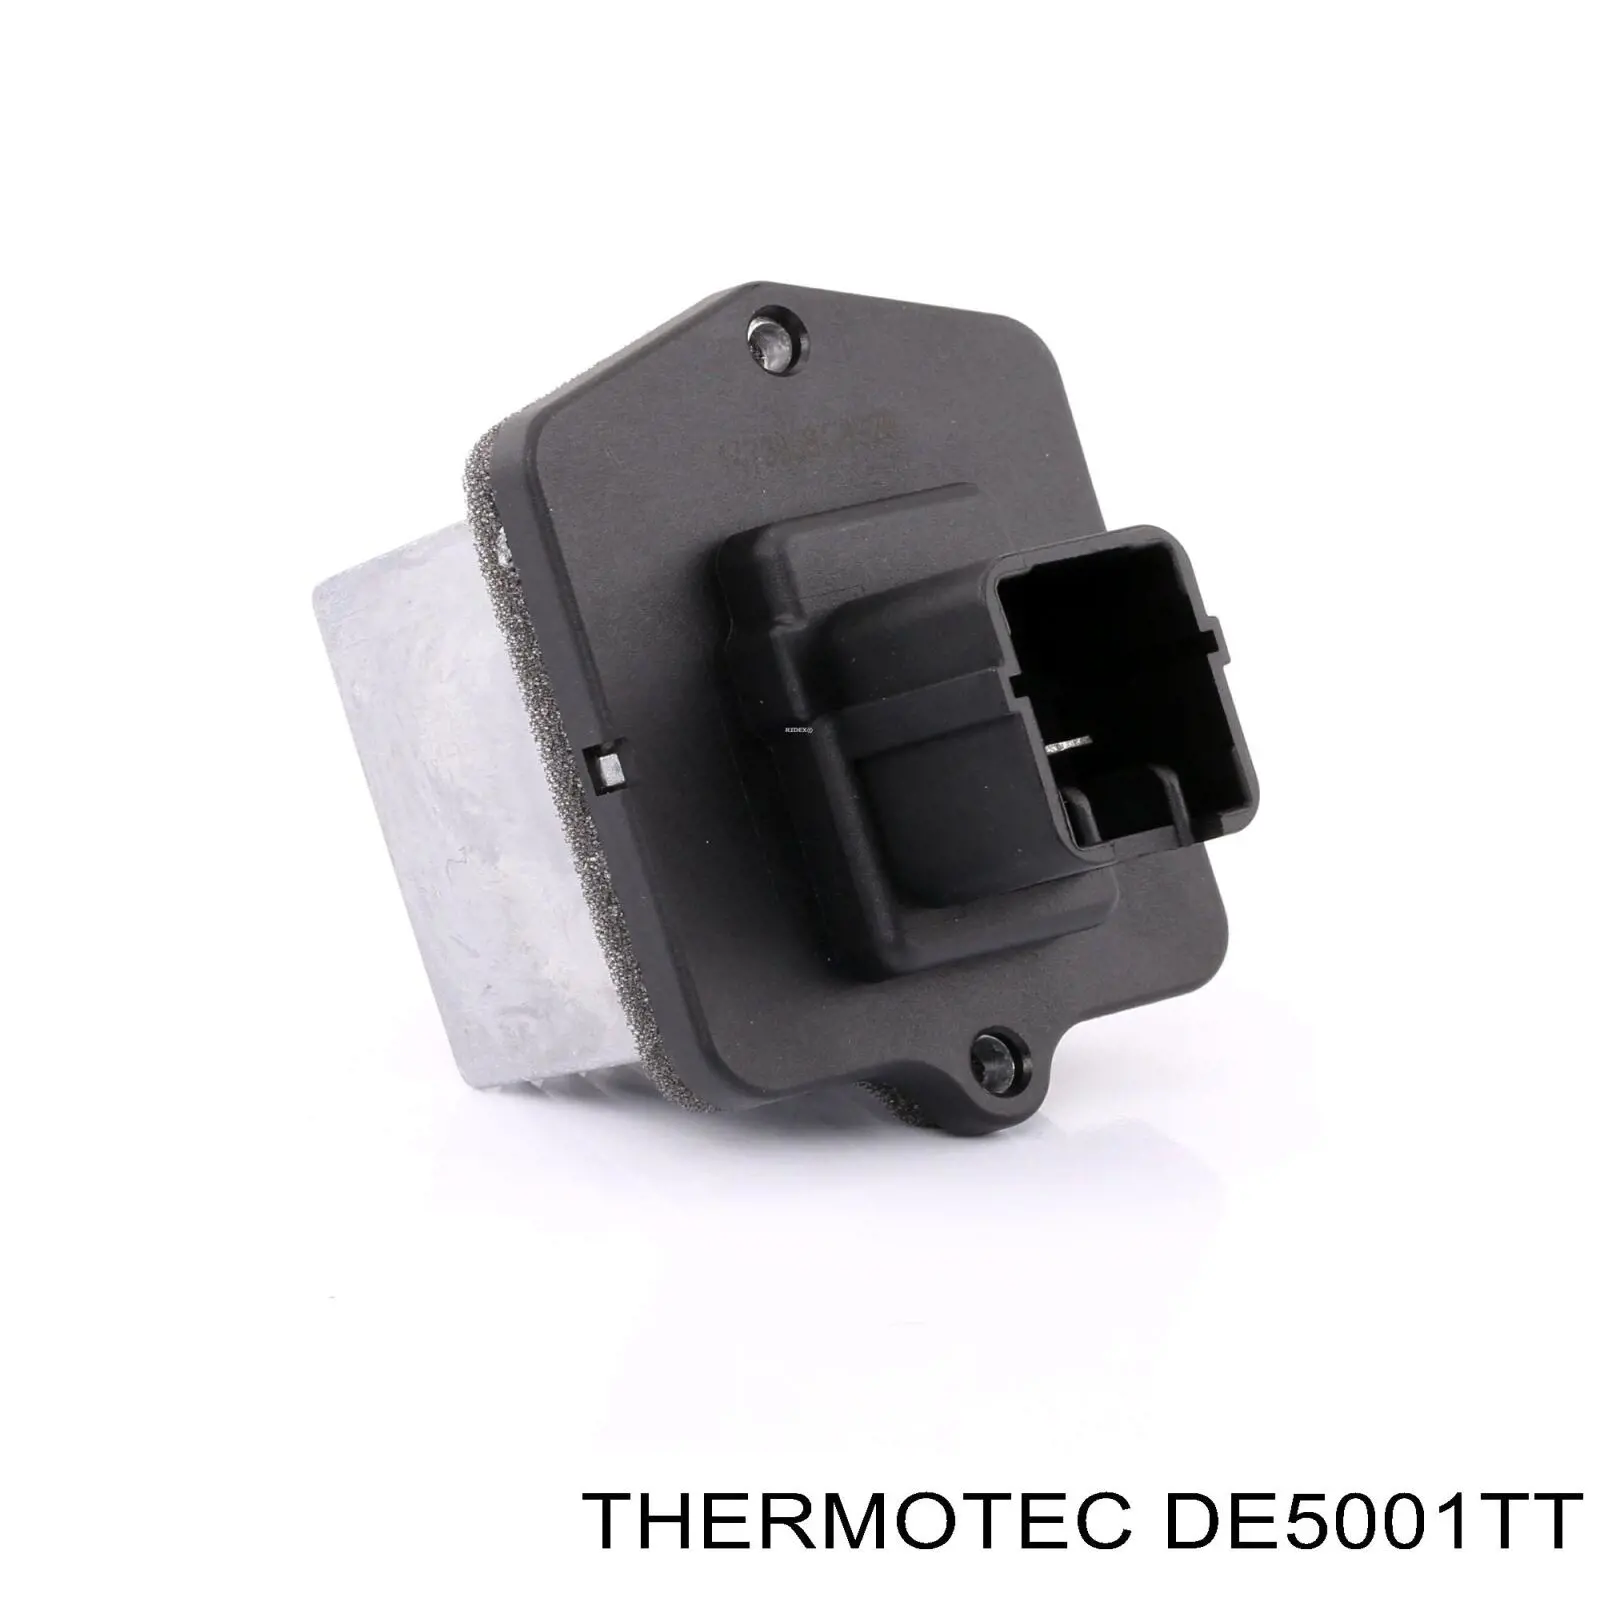 DE5001TT Thermotec resistencia de calefacción